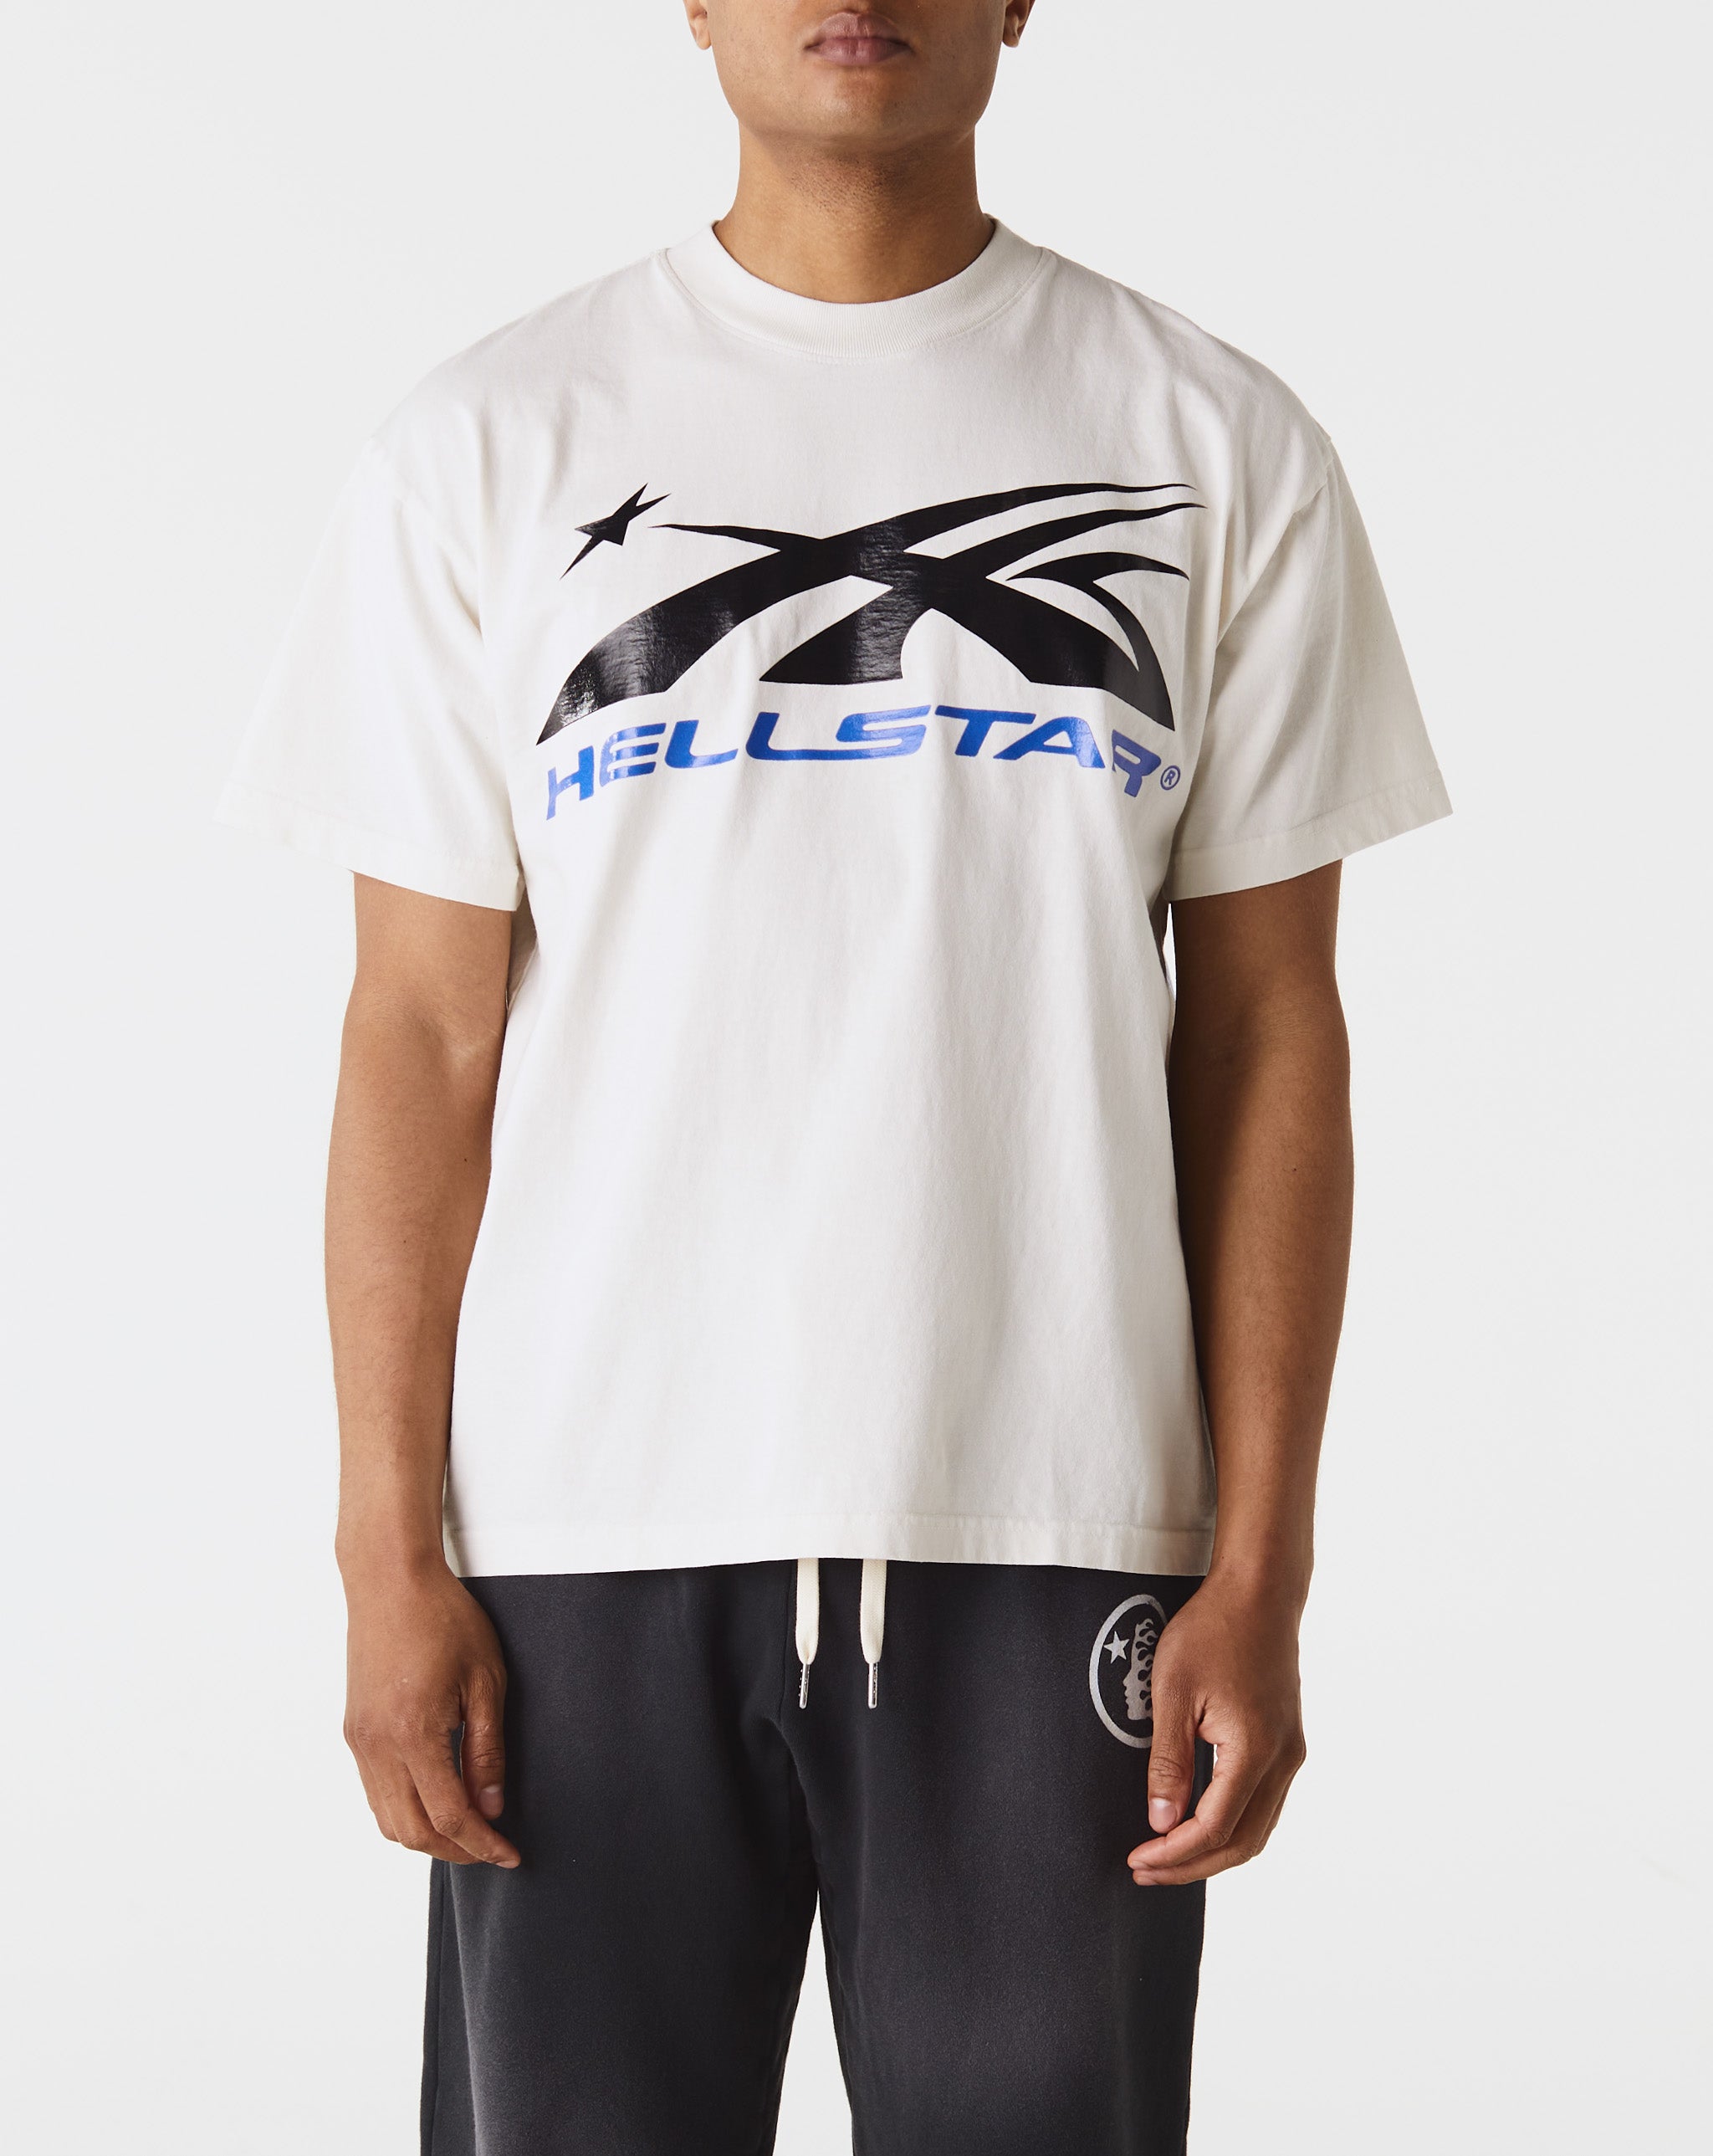 Hellstar Tecnologias New balance T-shirt à Manches Courtes Q Speed Jacquard  - Cheap Urlfreeze Jordan outlet